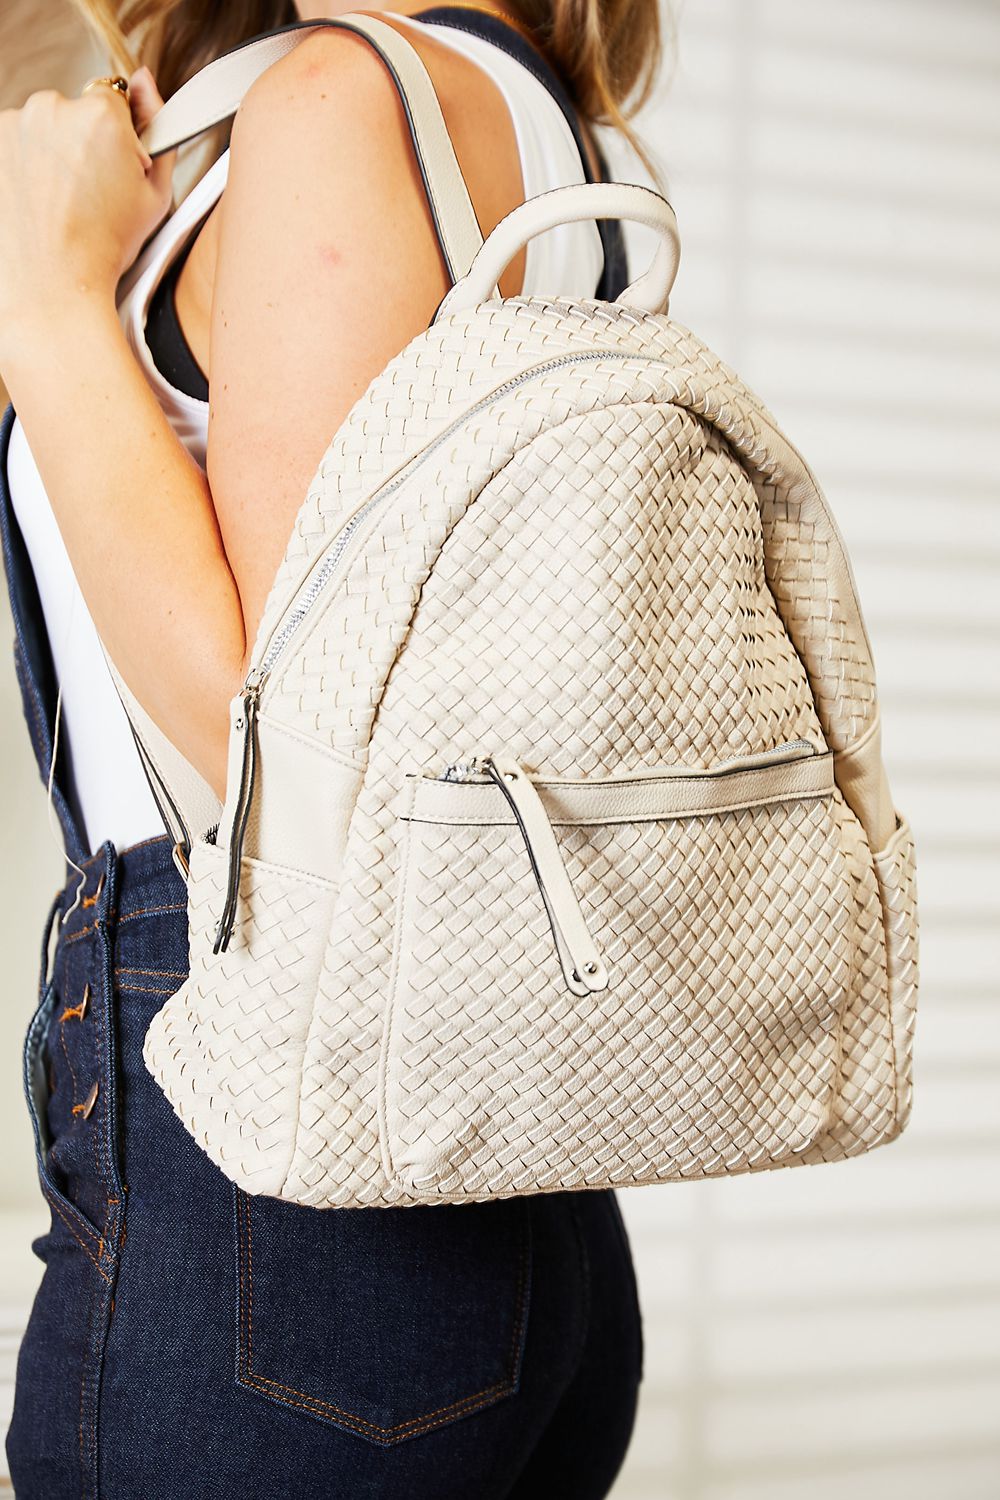 SHOMICO PU Leather Backpack - Fashion BTQ -  - Fashion BTQ